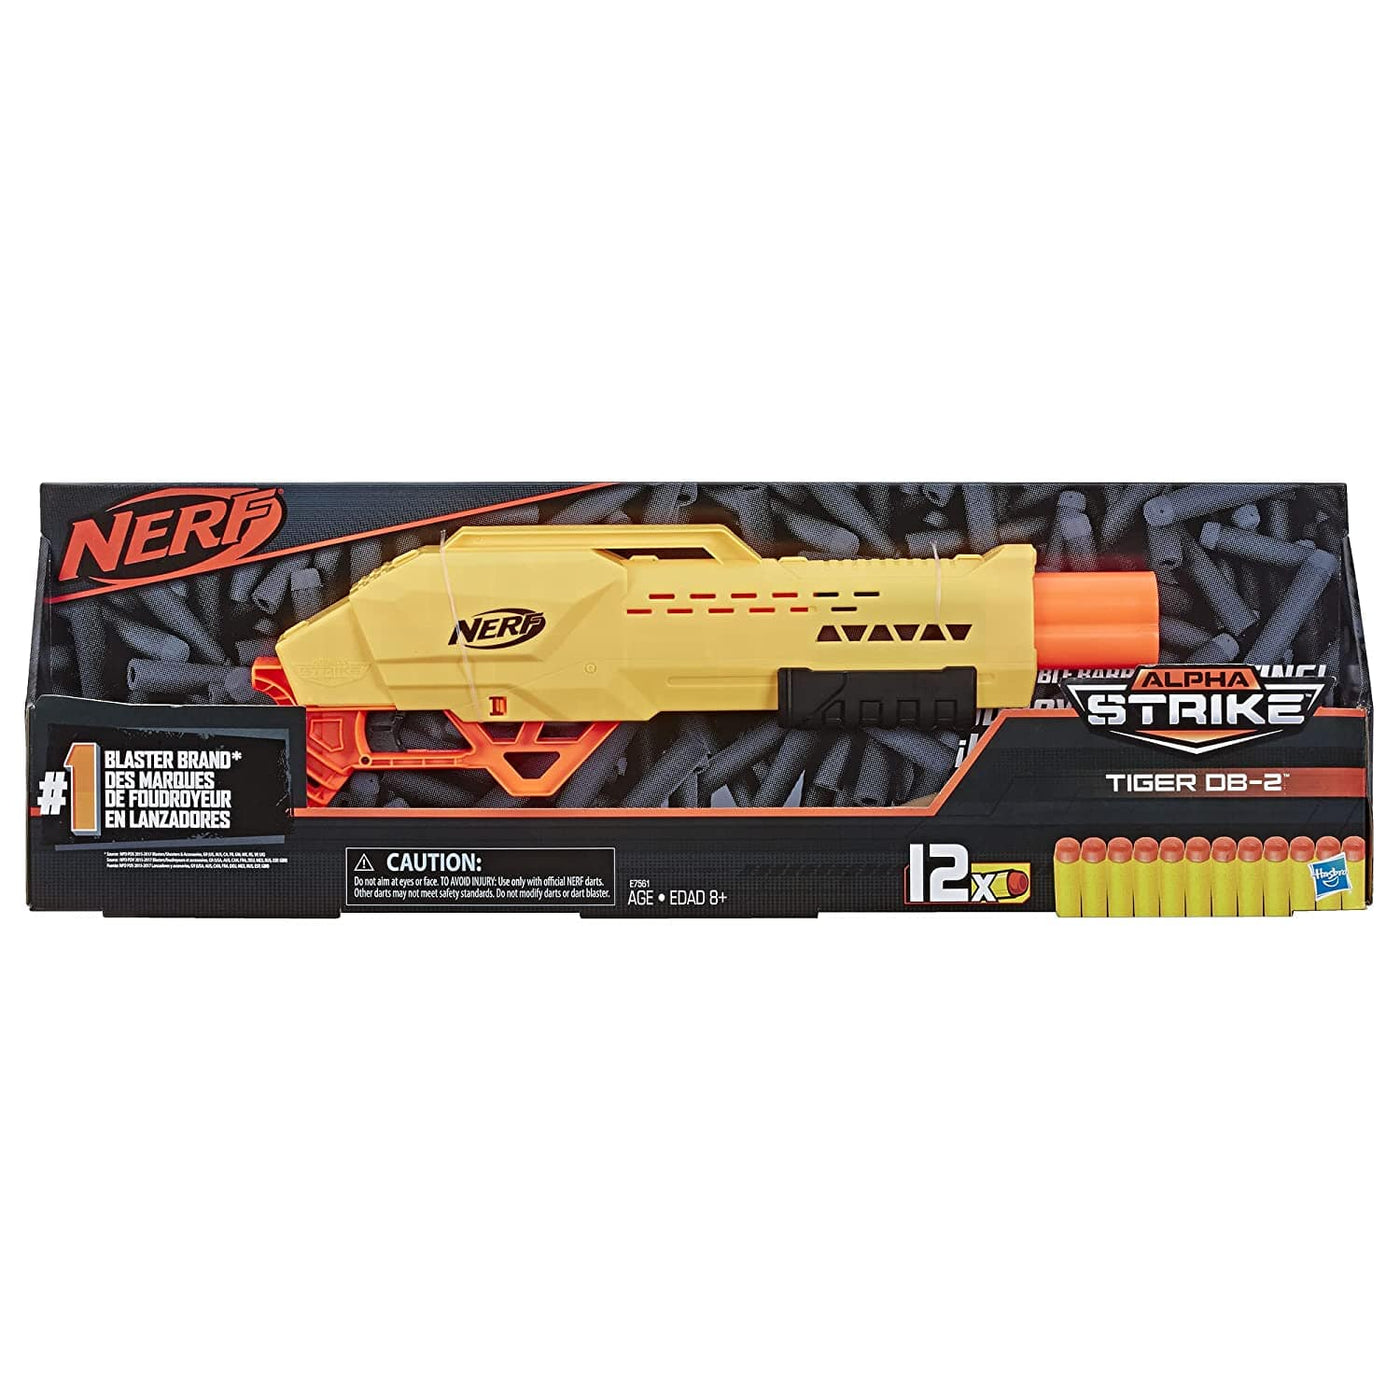 Tiger DB-2 Alpha Strike Toy Blaster | Nerf by Hasbro, USA Toy